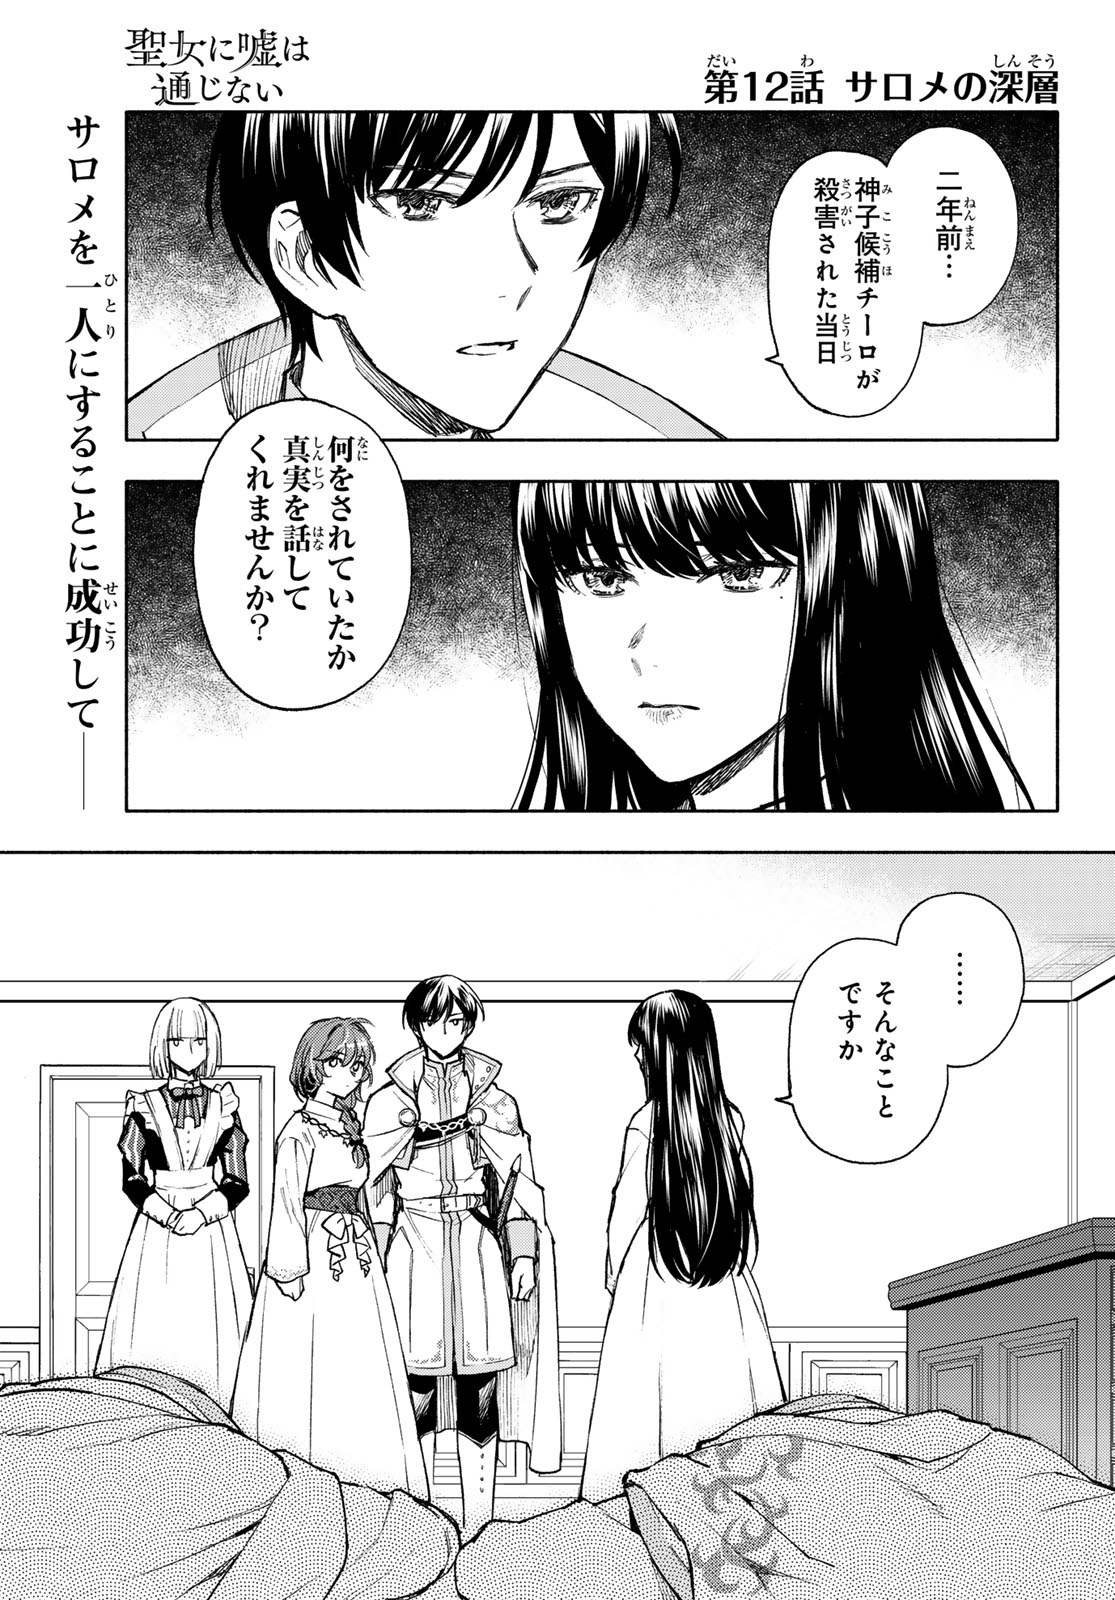 Seijo ni Uso wa Tsuujinai - Chapter 12 - Page 2